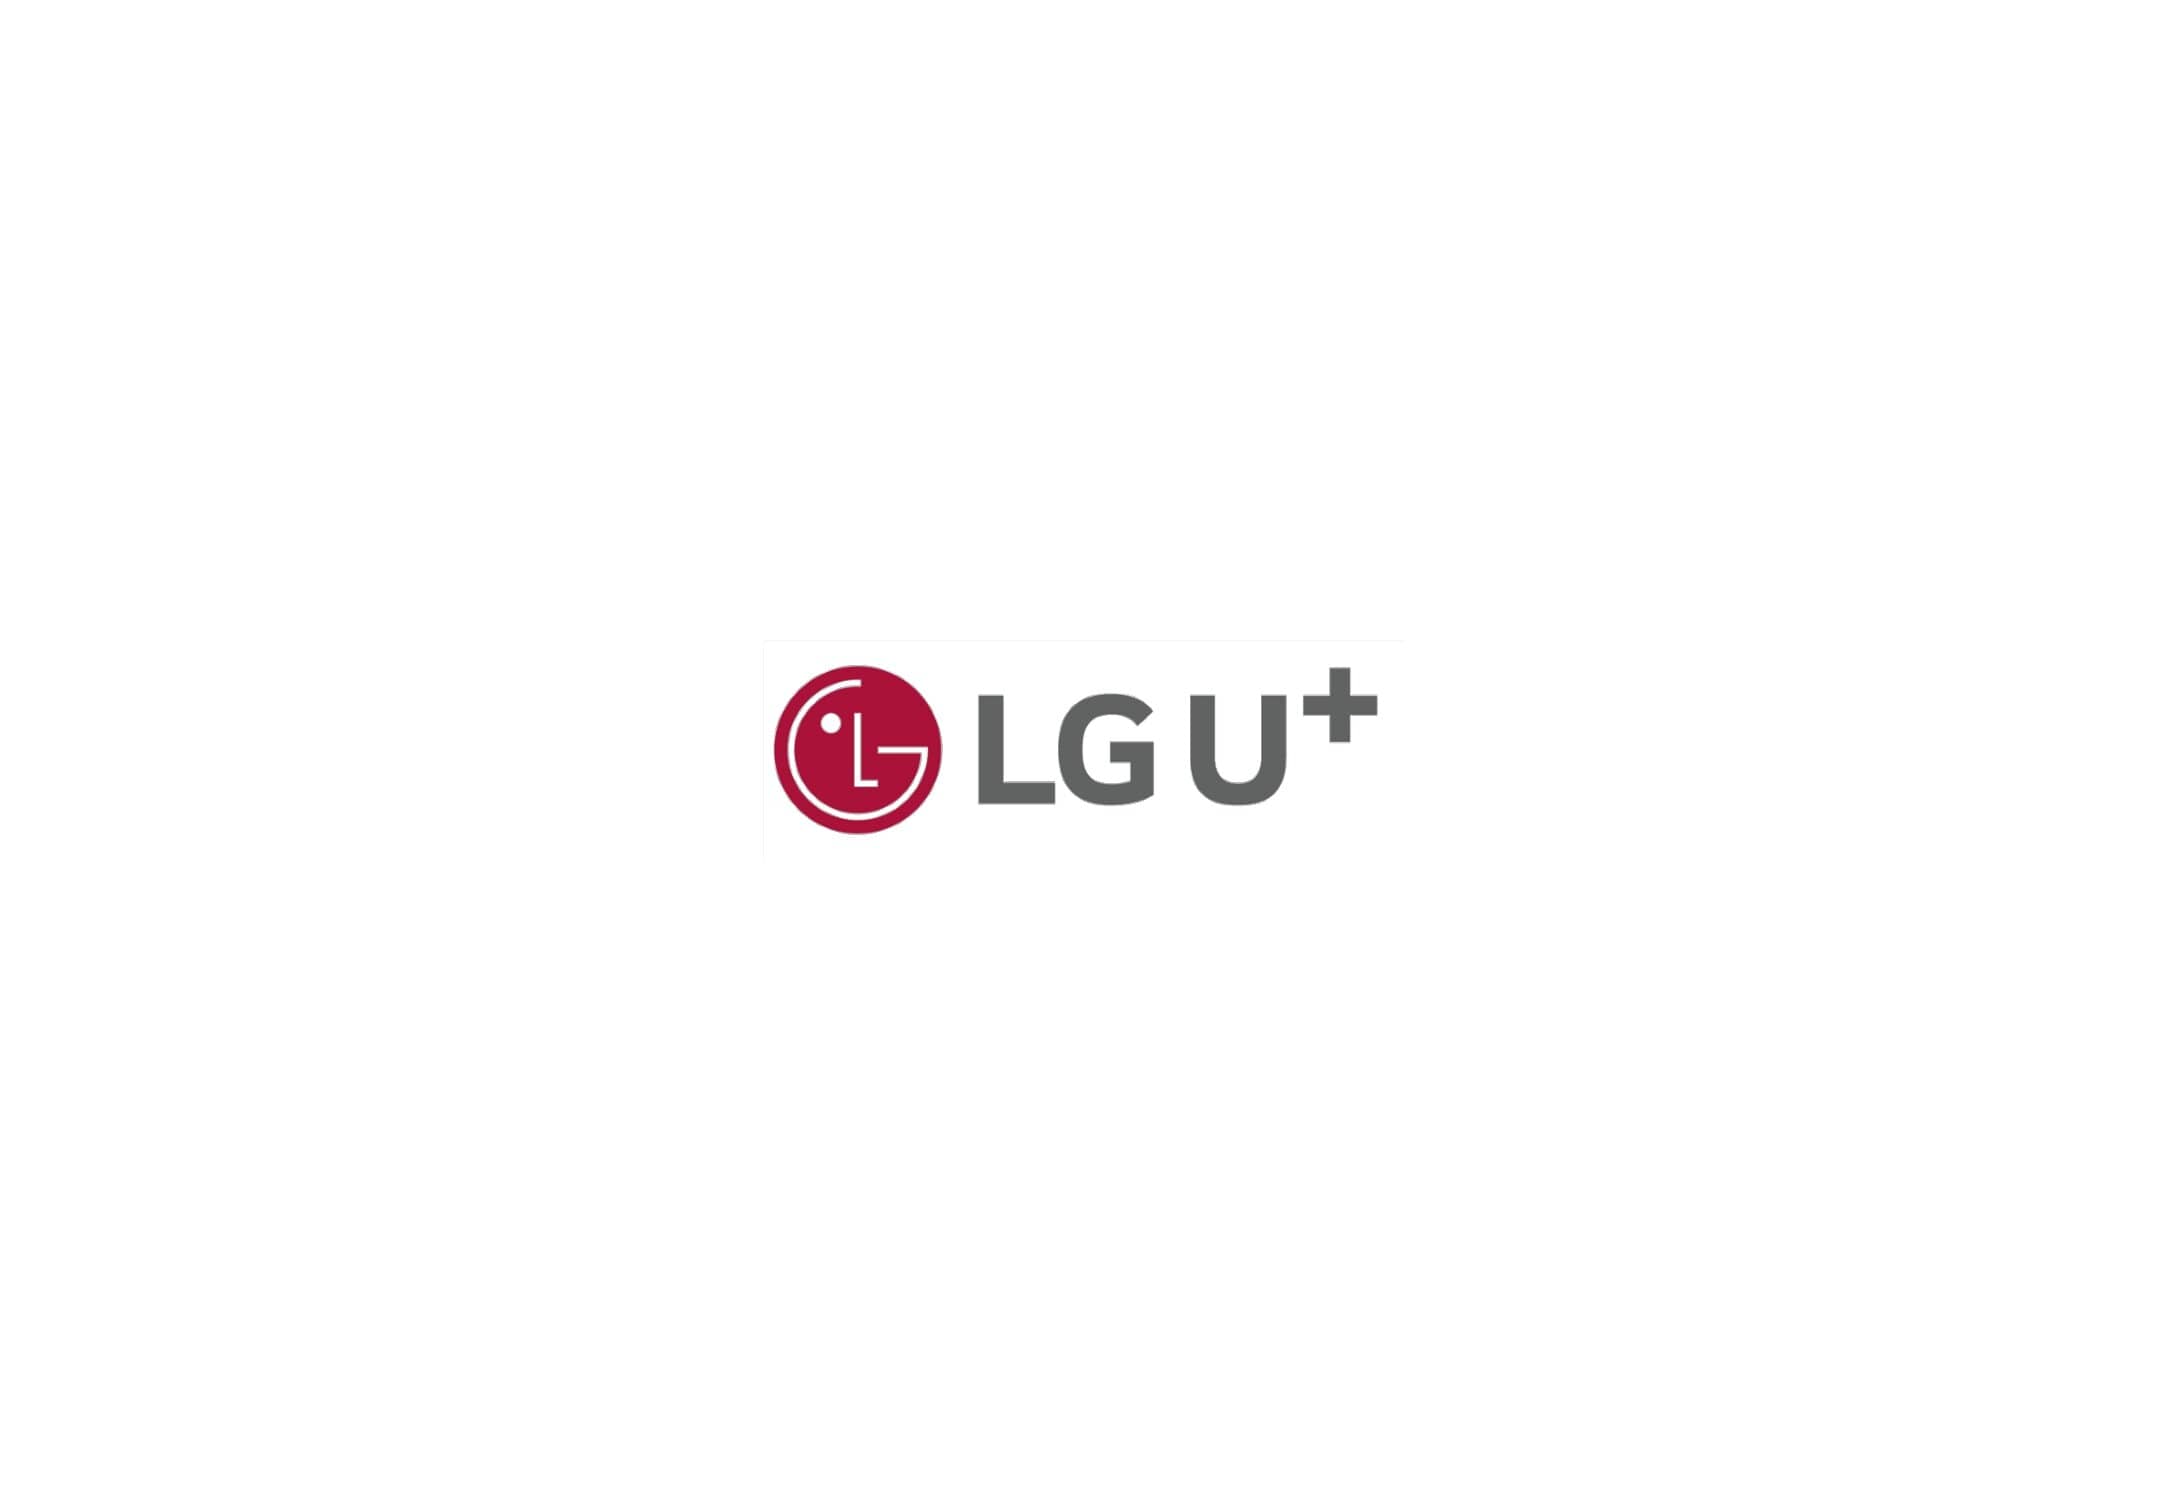 LG Uplus_3Q20_Earnings Release_KOR_Final_0016.jpg